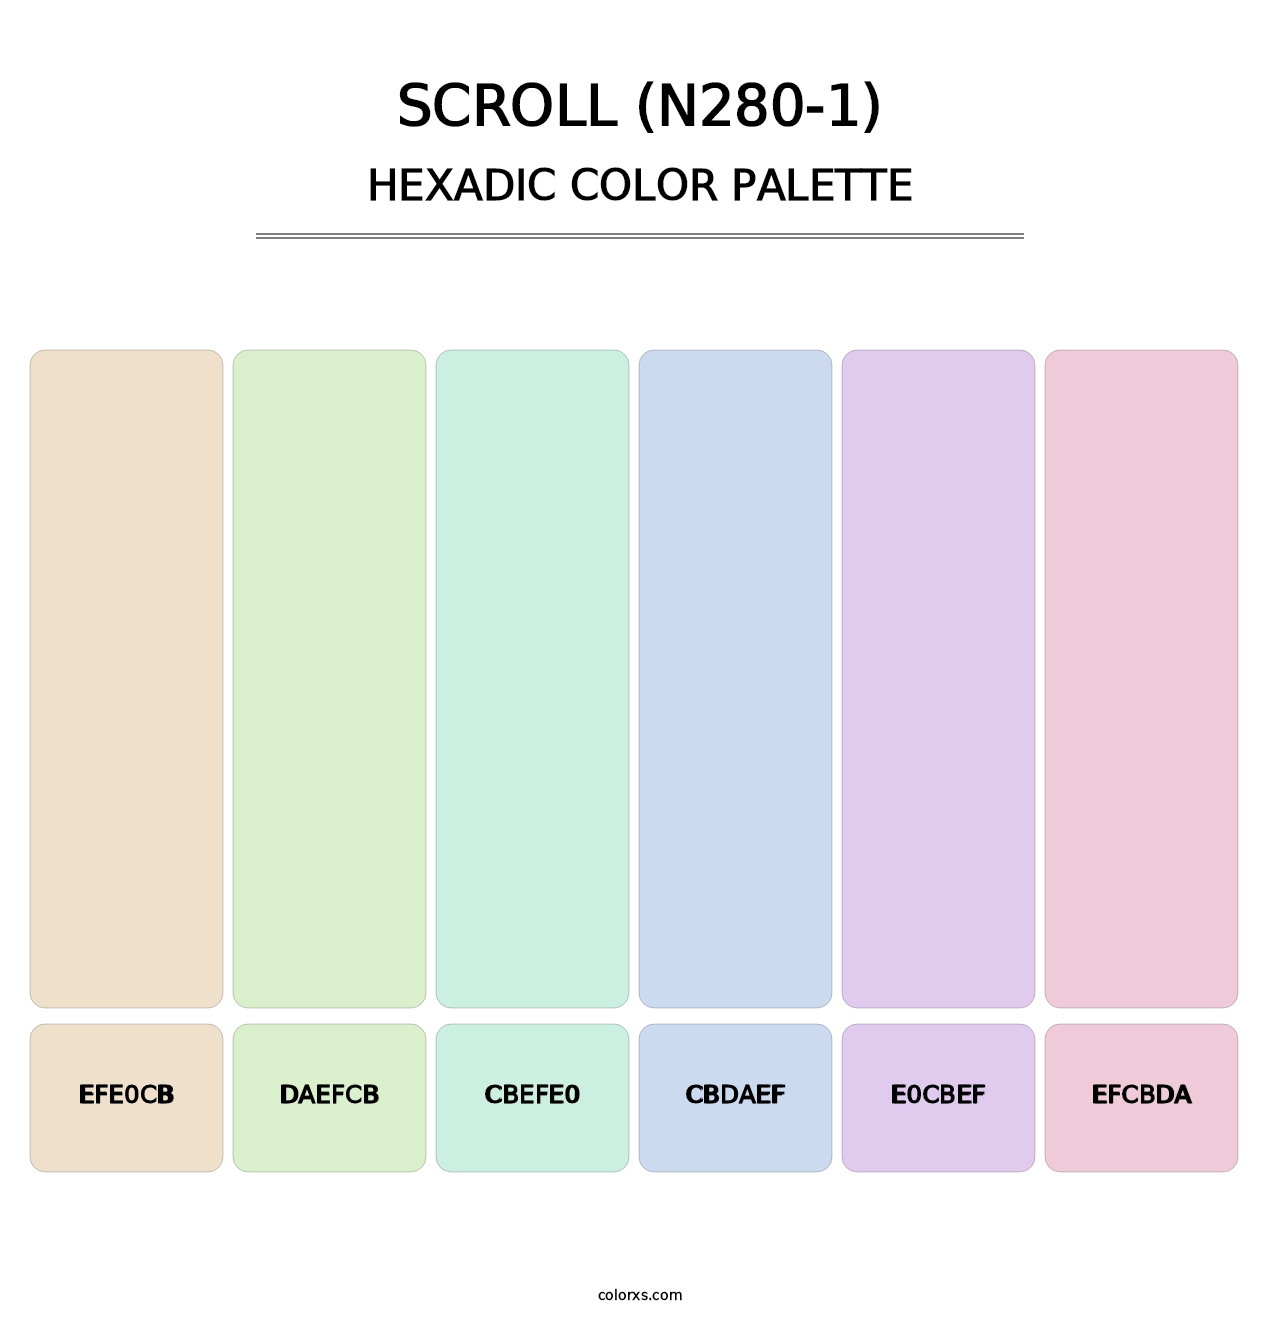 Scroll (N280-1) - Hexadic Color Palette